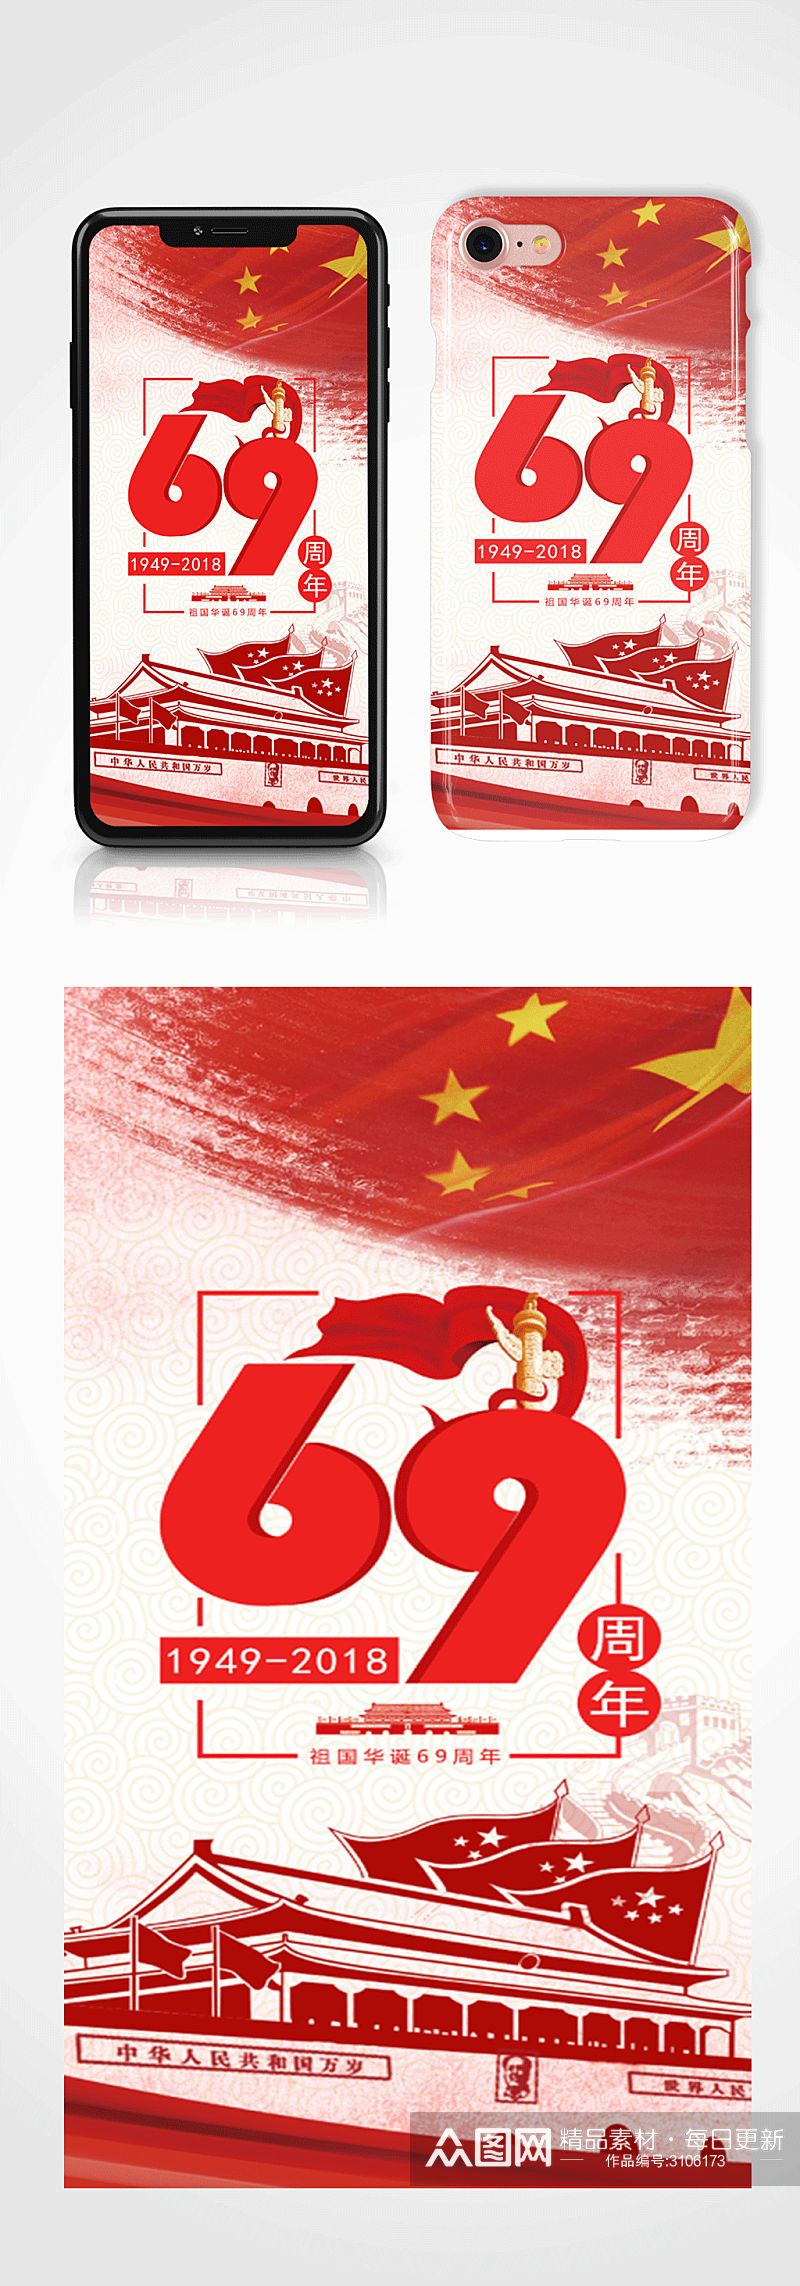 国庆节手机海报配图手机壳素材